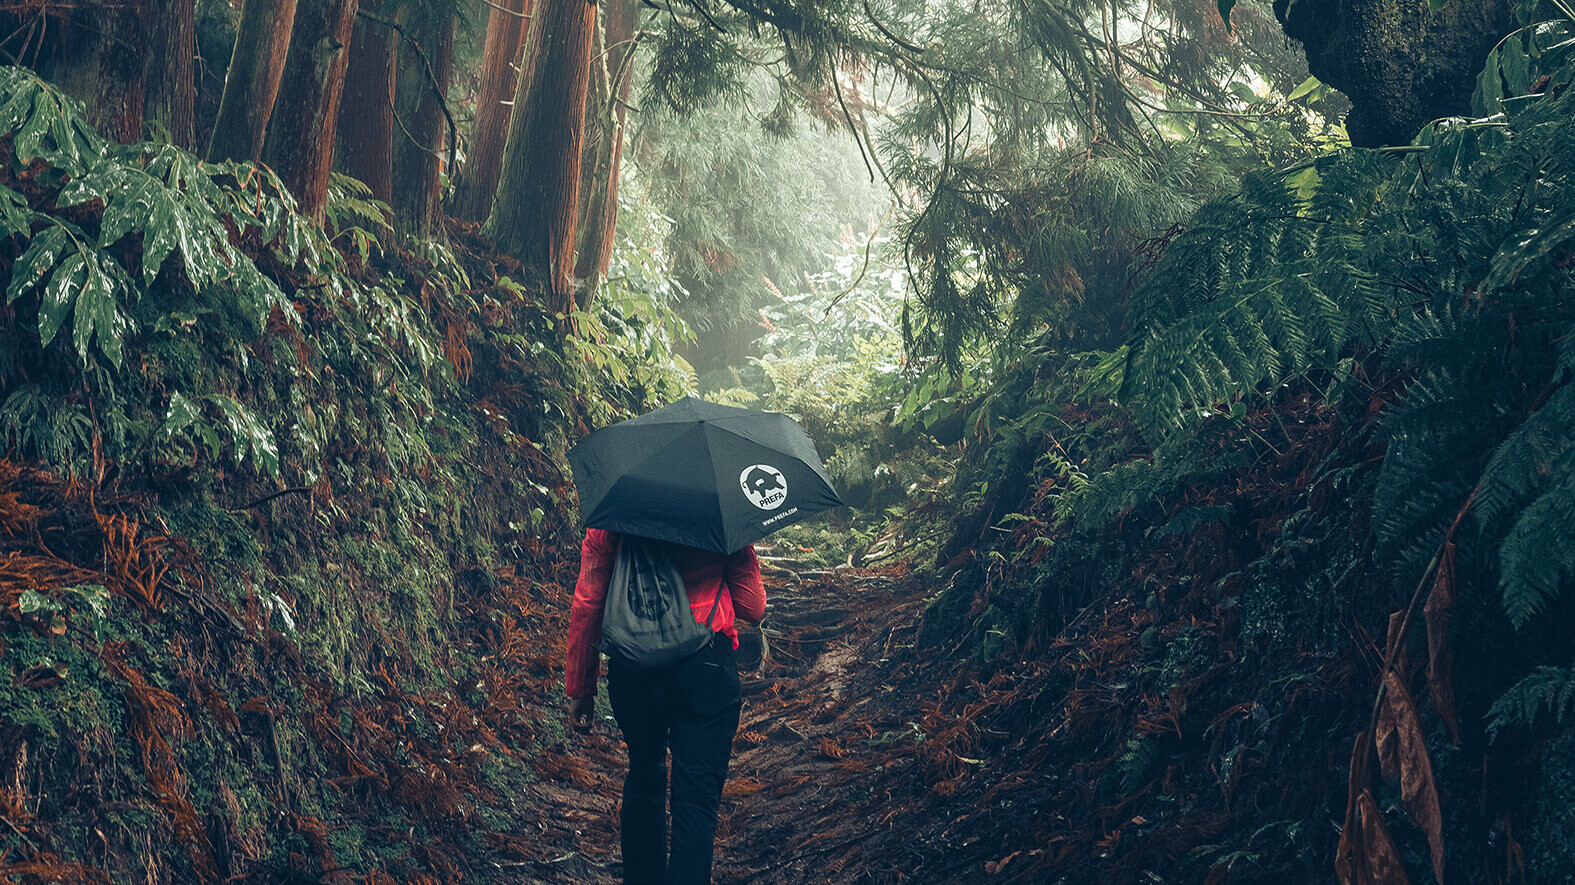 Aufnahme im Wald mit Wanderin in roter Jacke mit PREFA Regenschirm und Turnbeutel, symbolisiert den PREFA Umweltschutz und Nachhaltigkeit, sowie die Kreislaufwirtschaft und Recycling